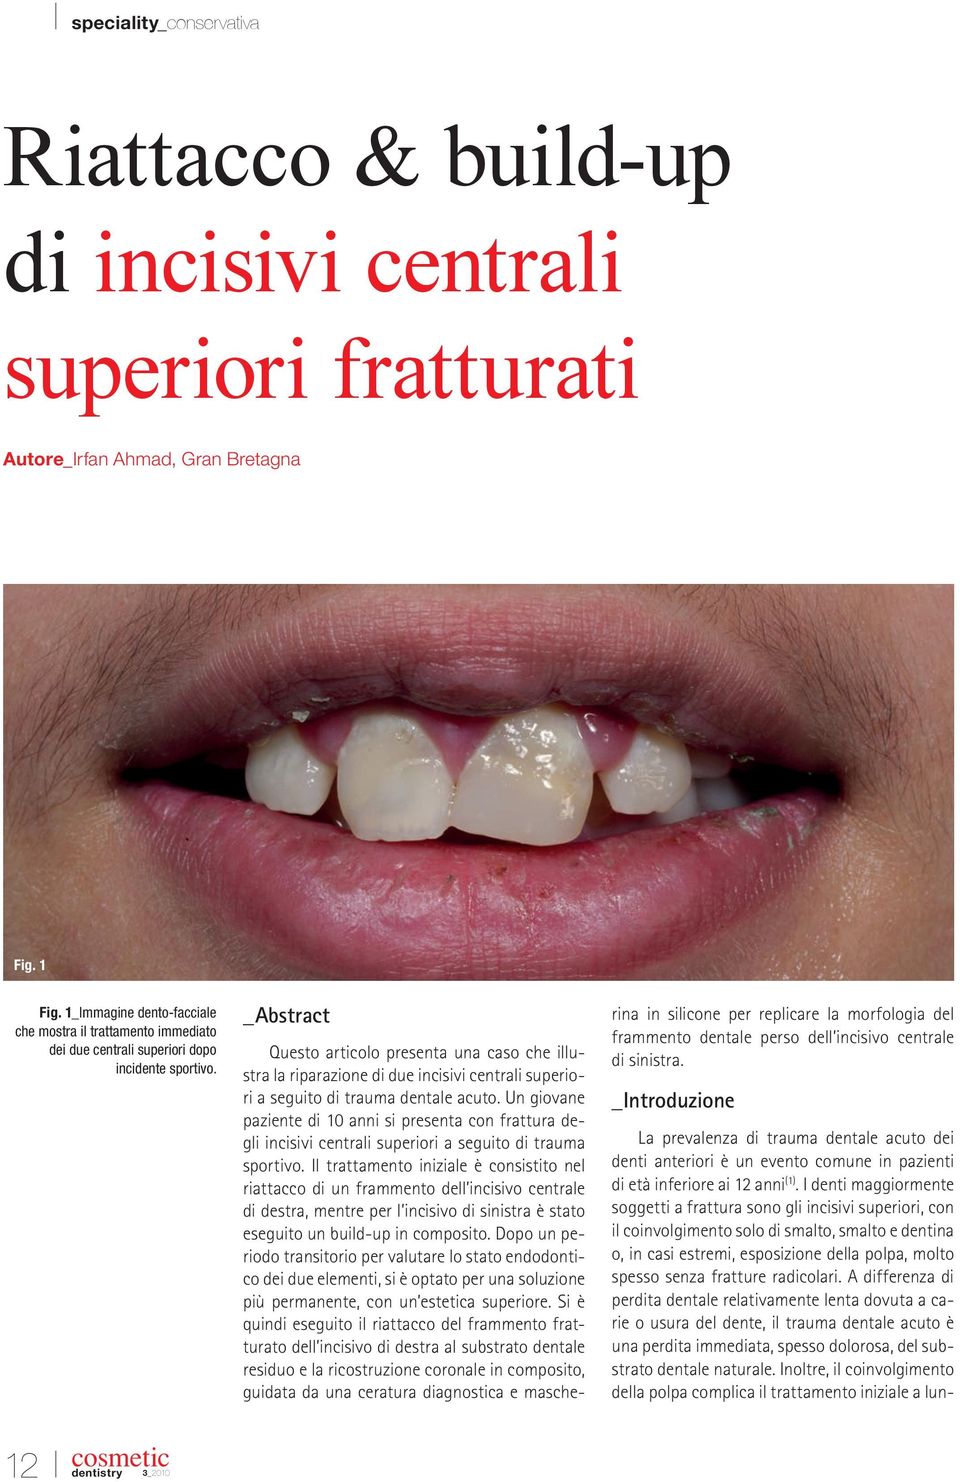 _Abstract Questo articolo presenta una caso che illustra la riparazione di due incisivi centrali superiori a seguito di trauma dentale acuto.